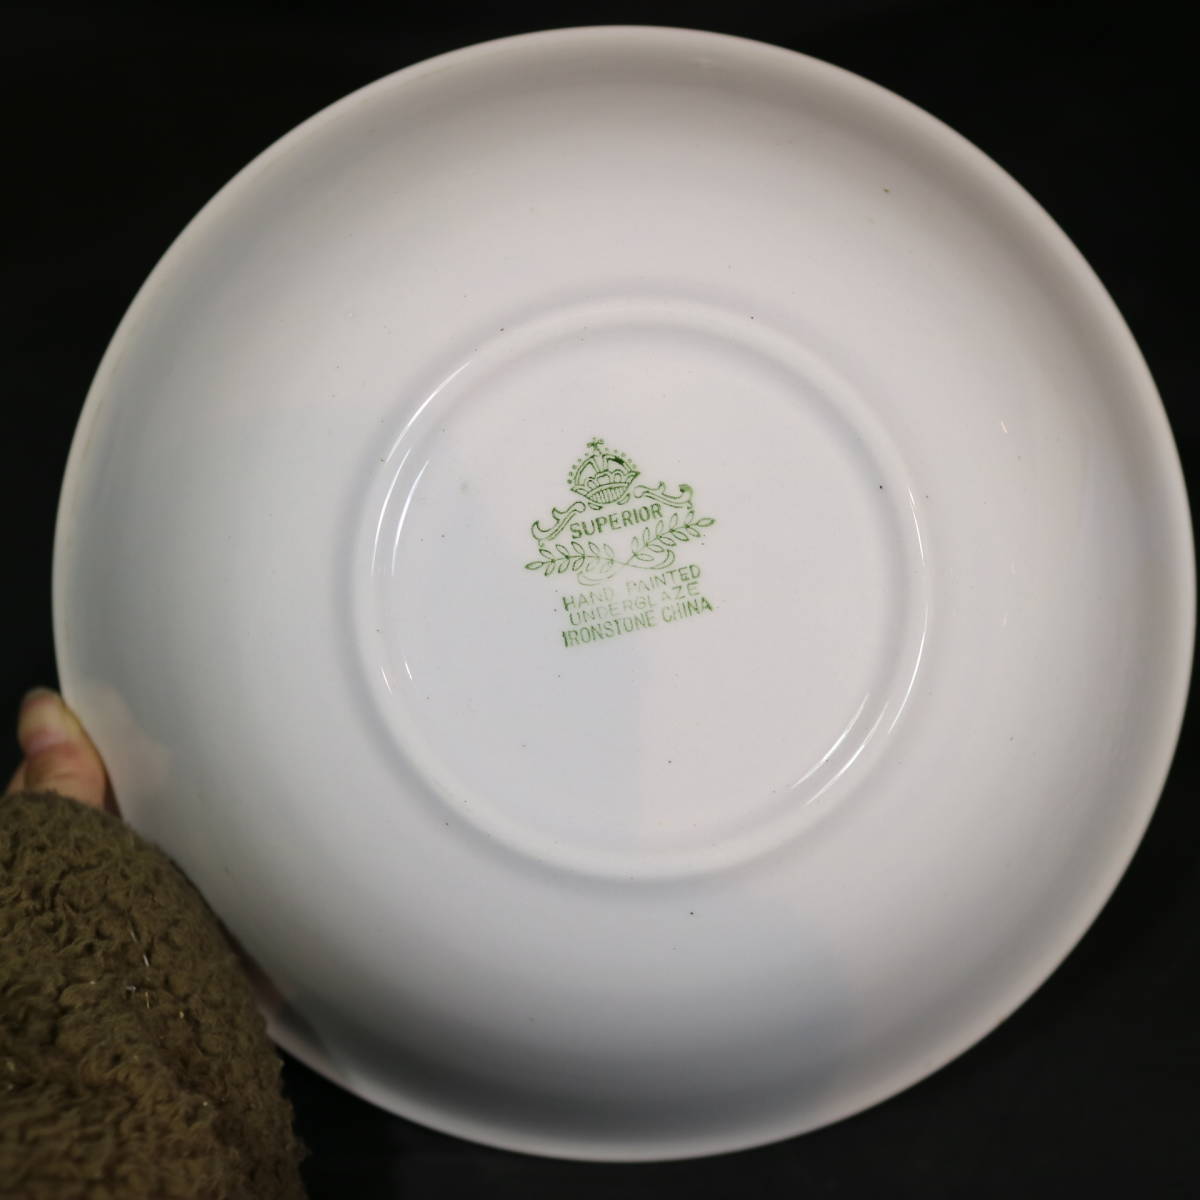 SUPERIOR スーペリア 陶器 サラダボウル セット IRONSTONE CHINA ハンドペイント 木製 サラダフォーク・スプーン 洋食器 深皿 メイン皿の画像4